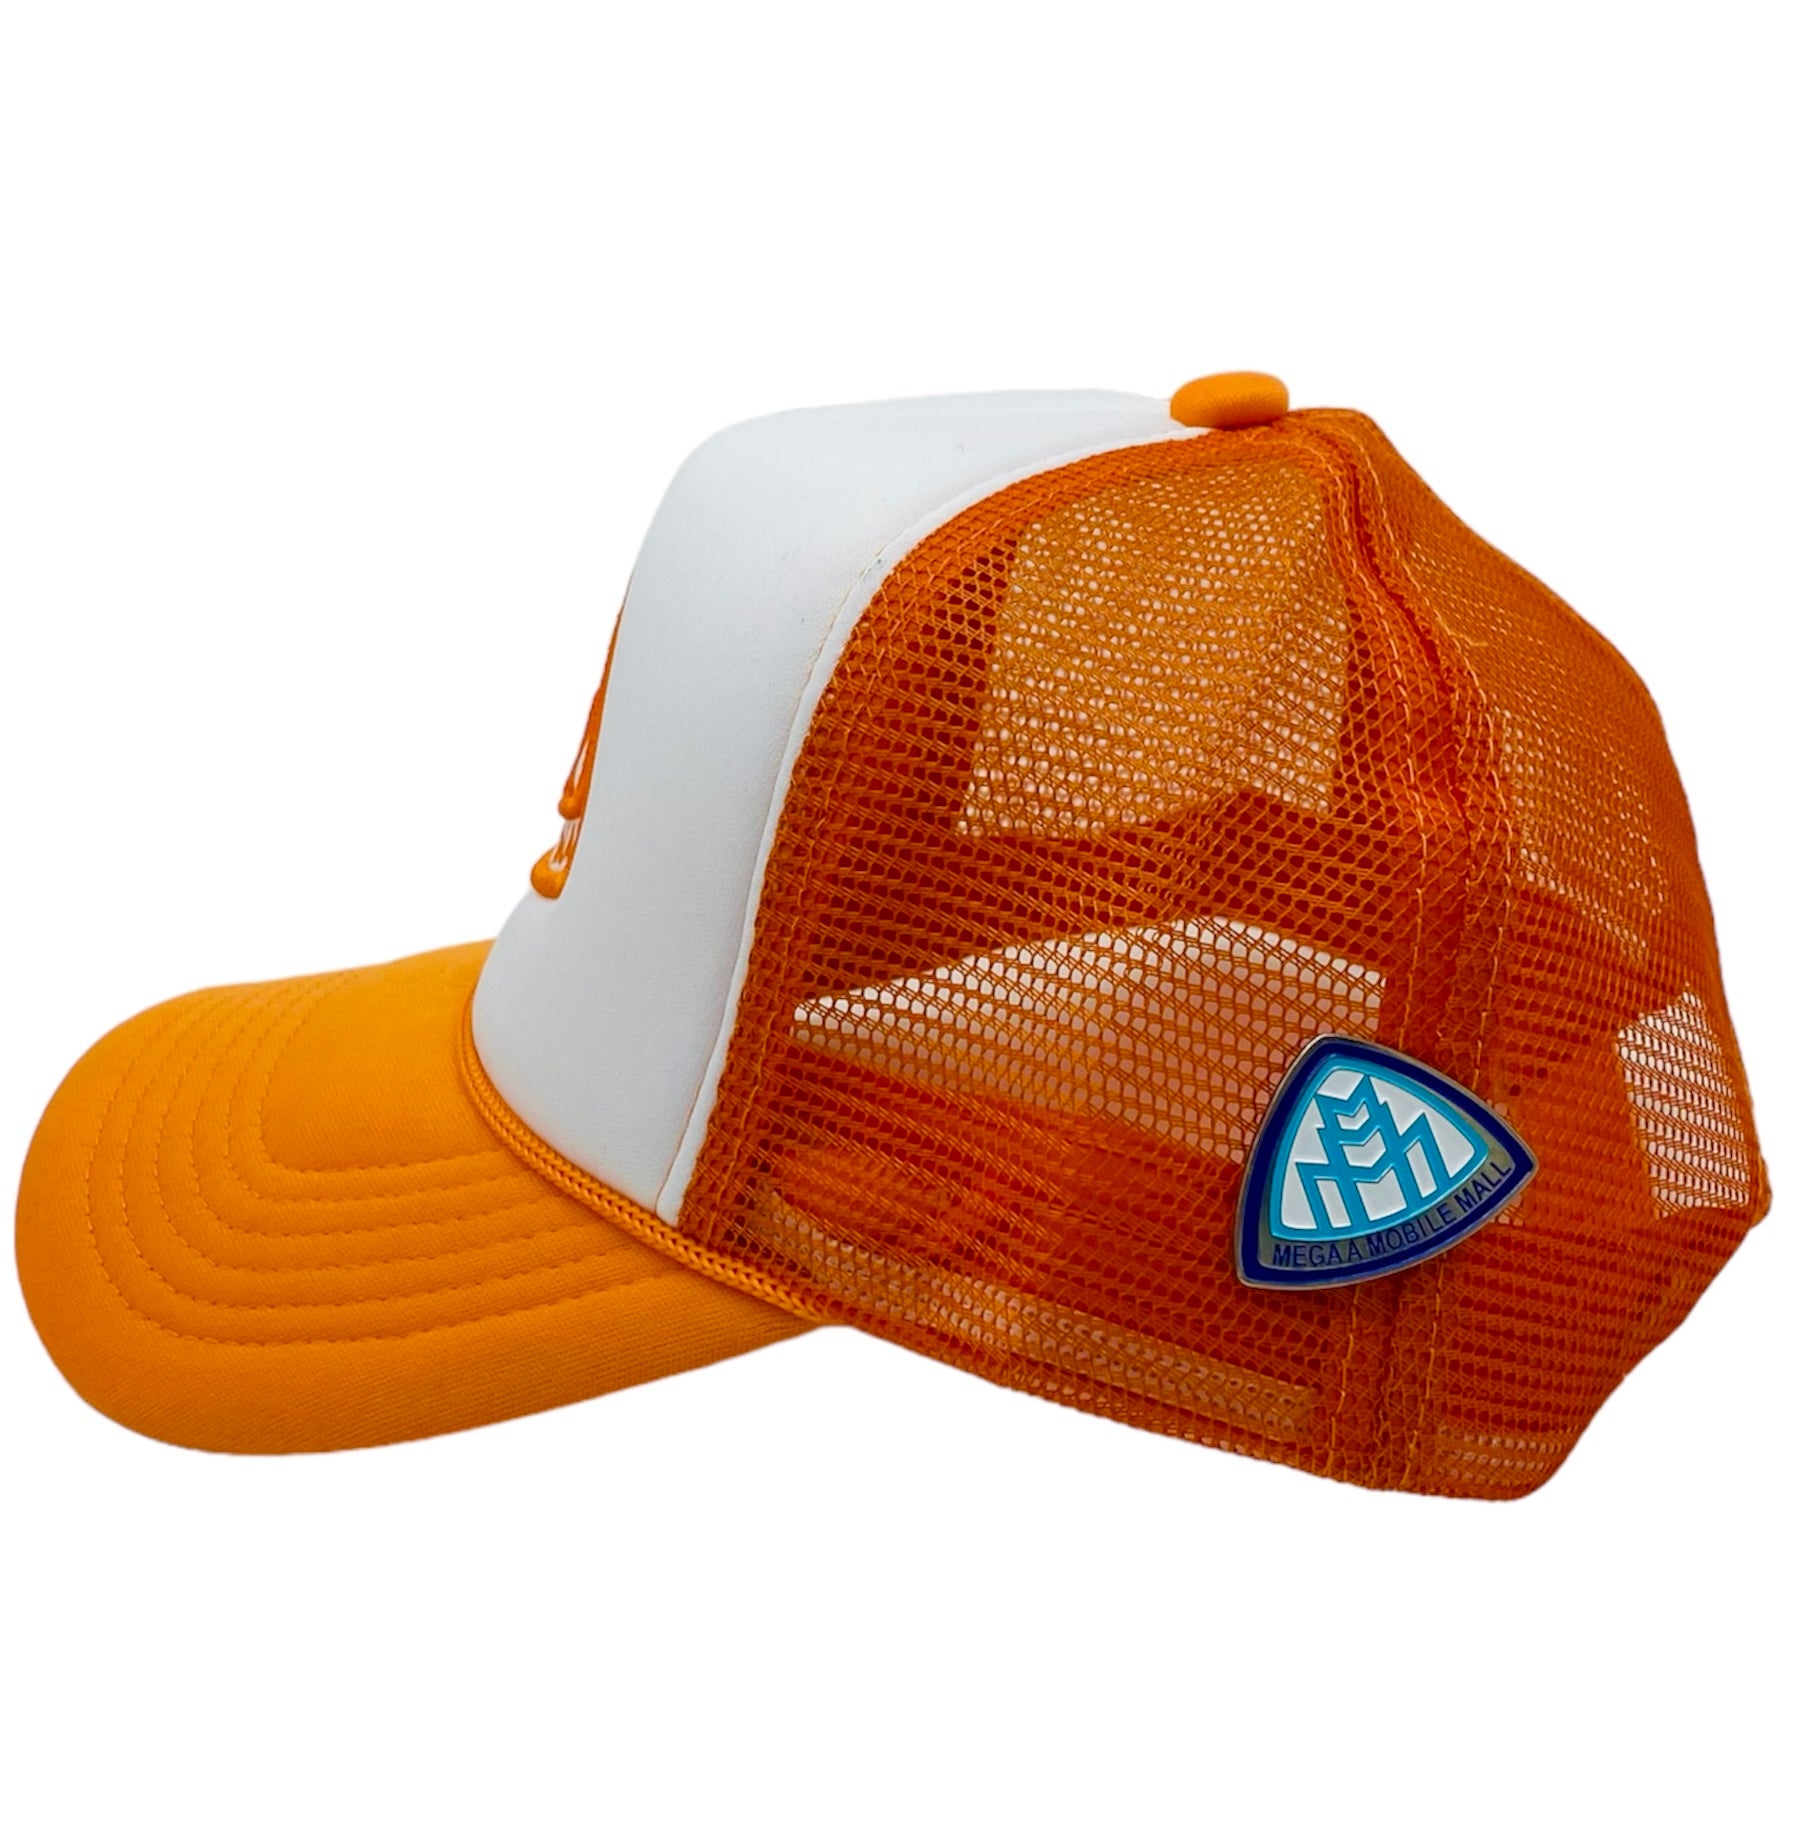 Triple M Logo Trucker - Orange side view